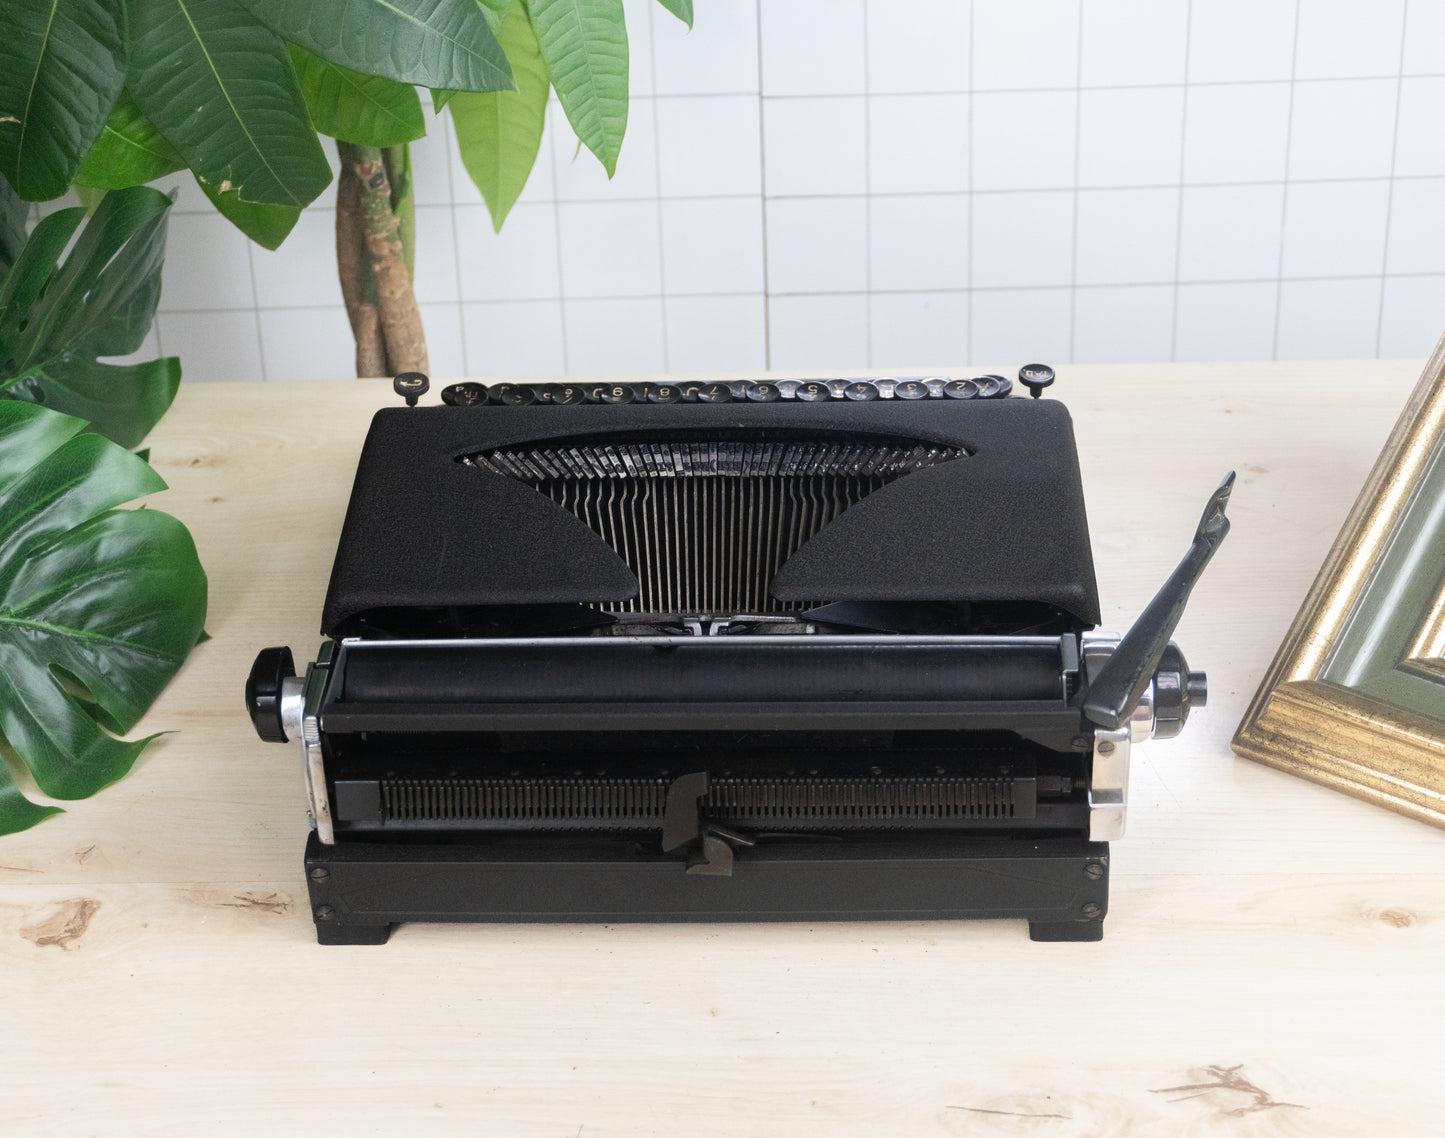 Working Calanda typewriter